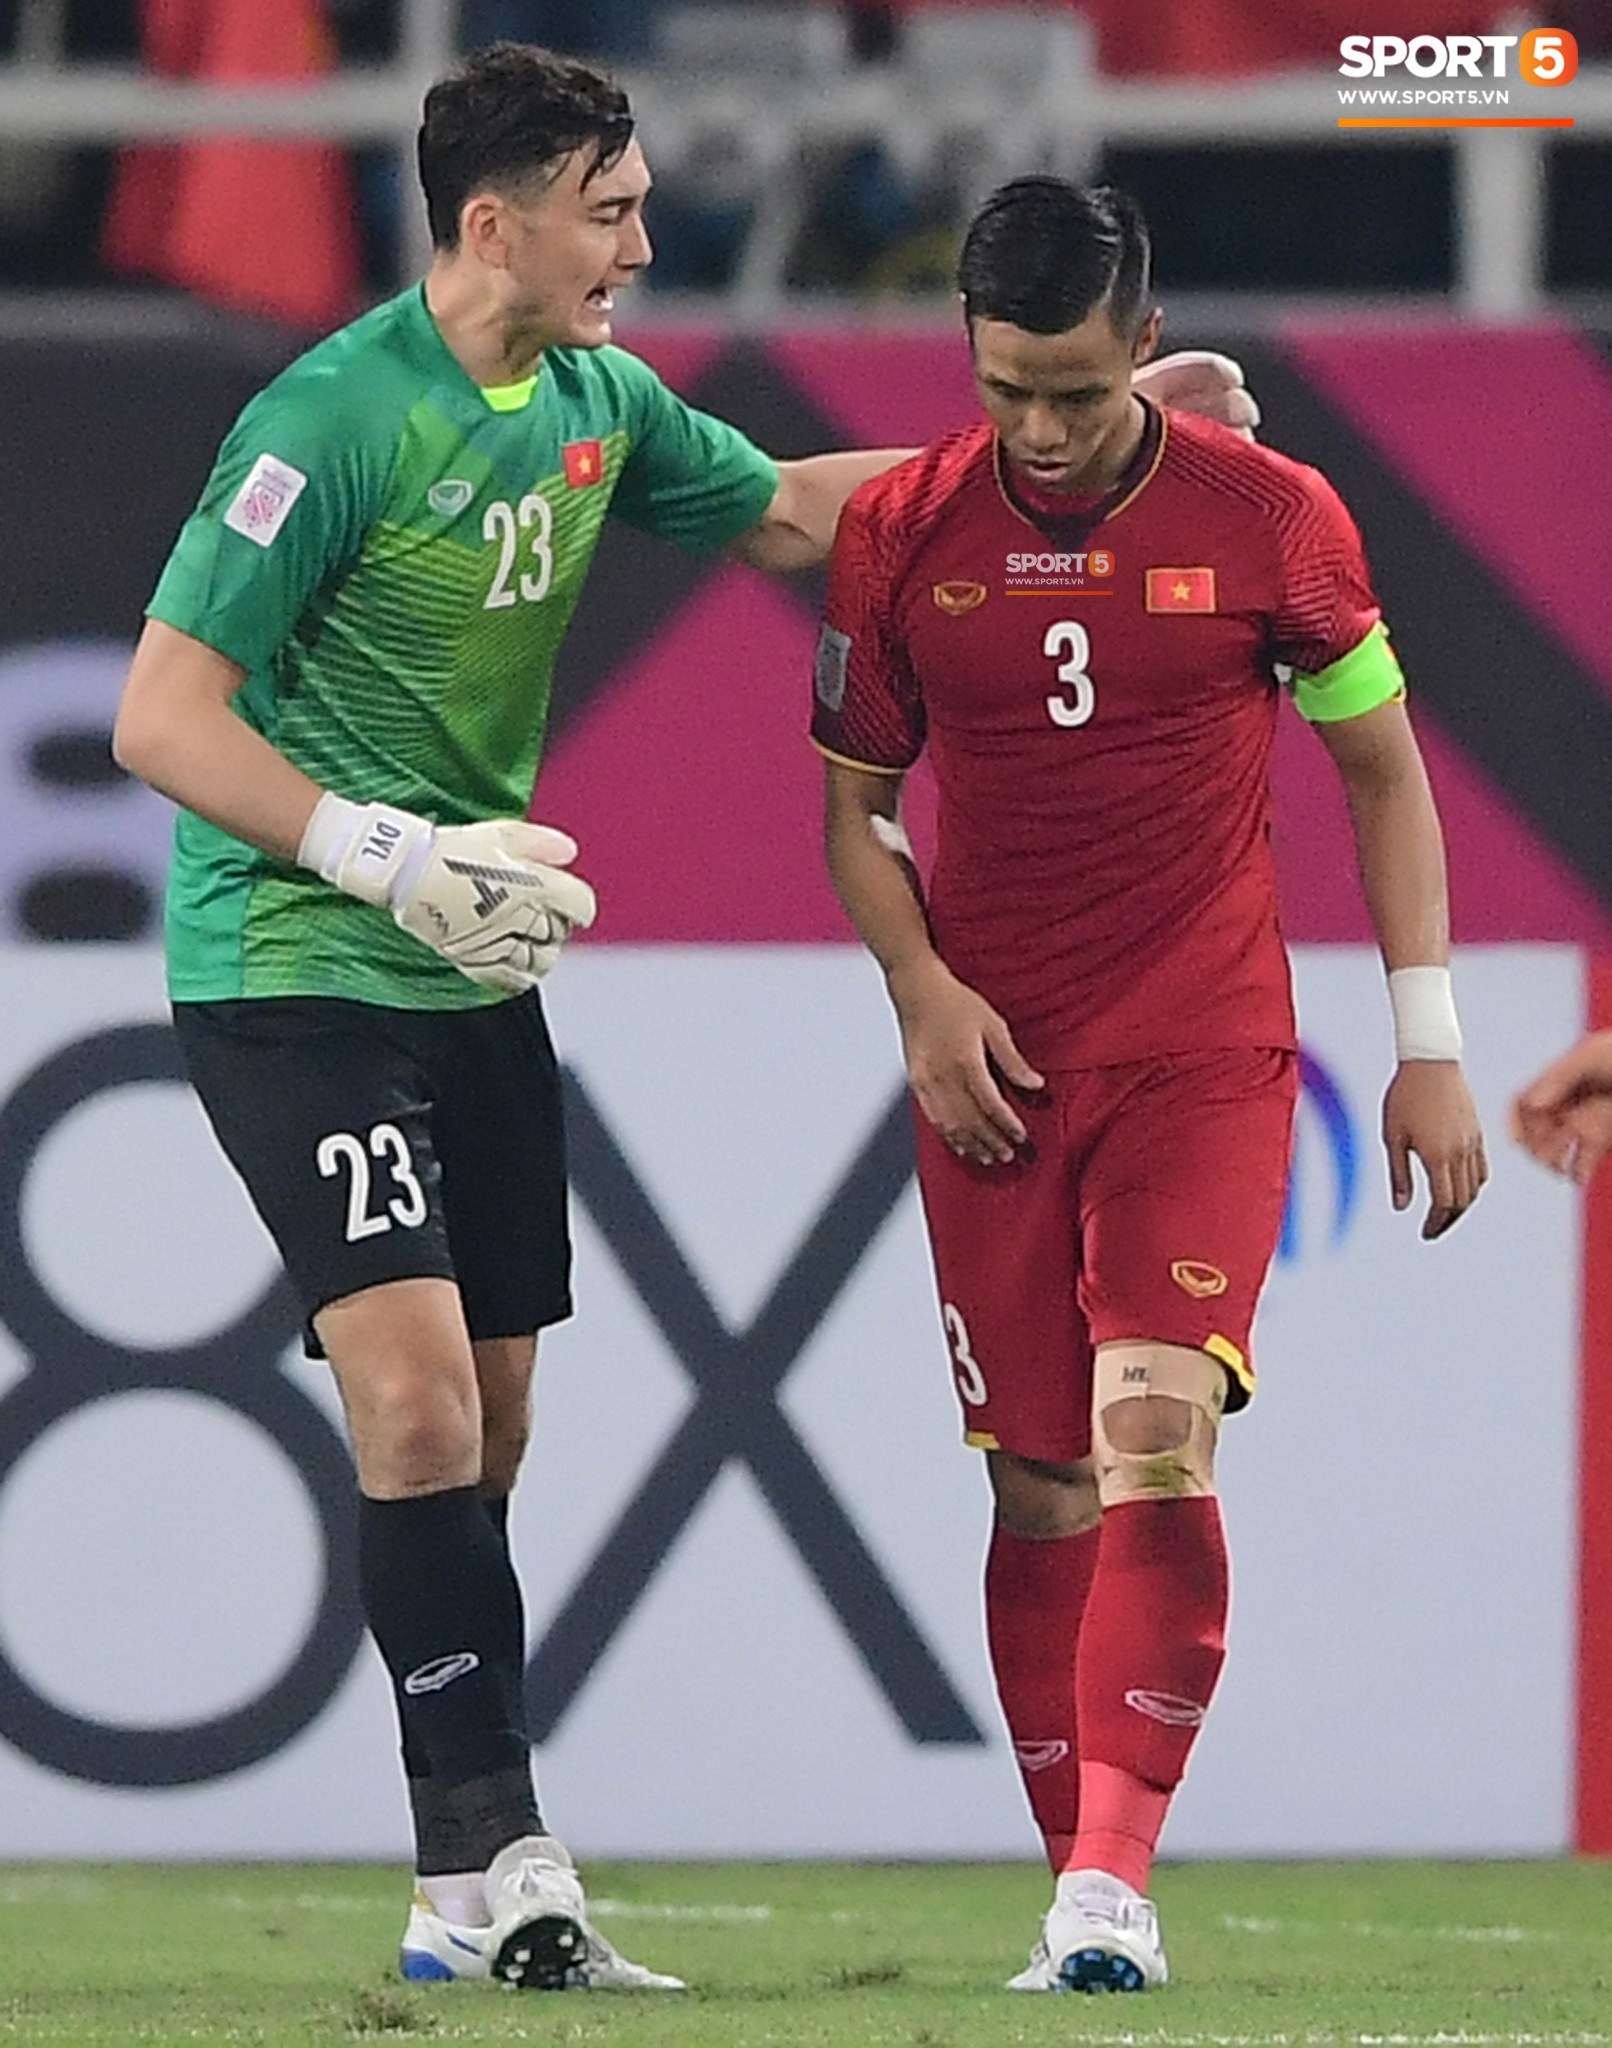 AFC tiết lộ về cân nặng của cầu thủ Việt Nam khiến fan ngỡ ngàng - Ảnh 2.